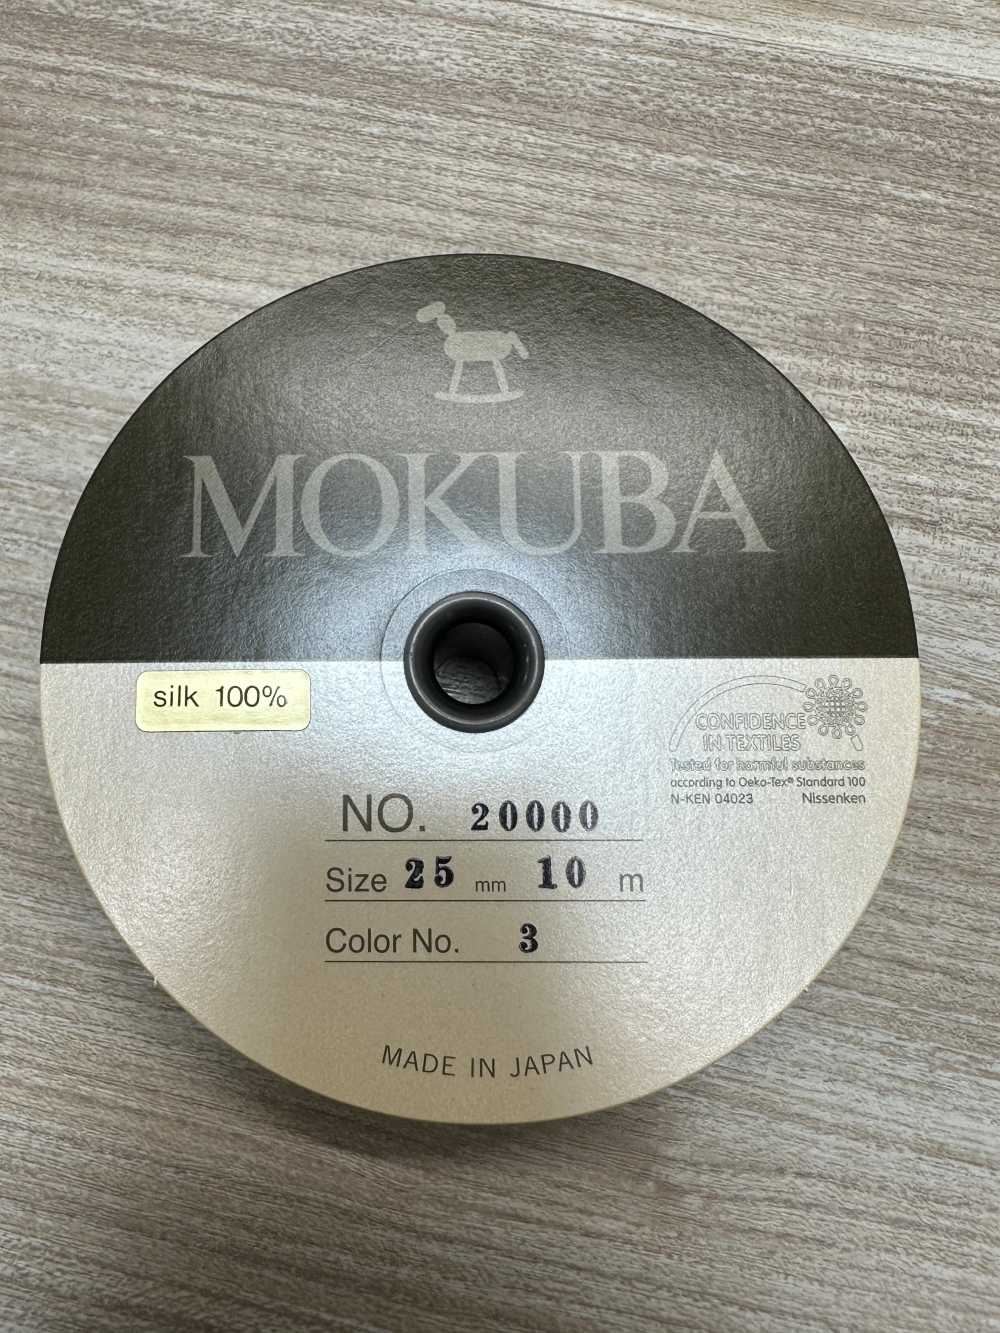 20000 Ruban Gros-grain En Soie MOKUBA [outlet][Ruban Ruban Cordon] Mokuba